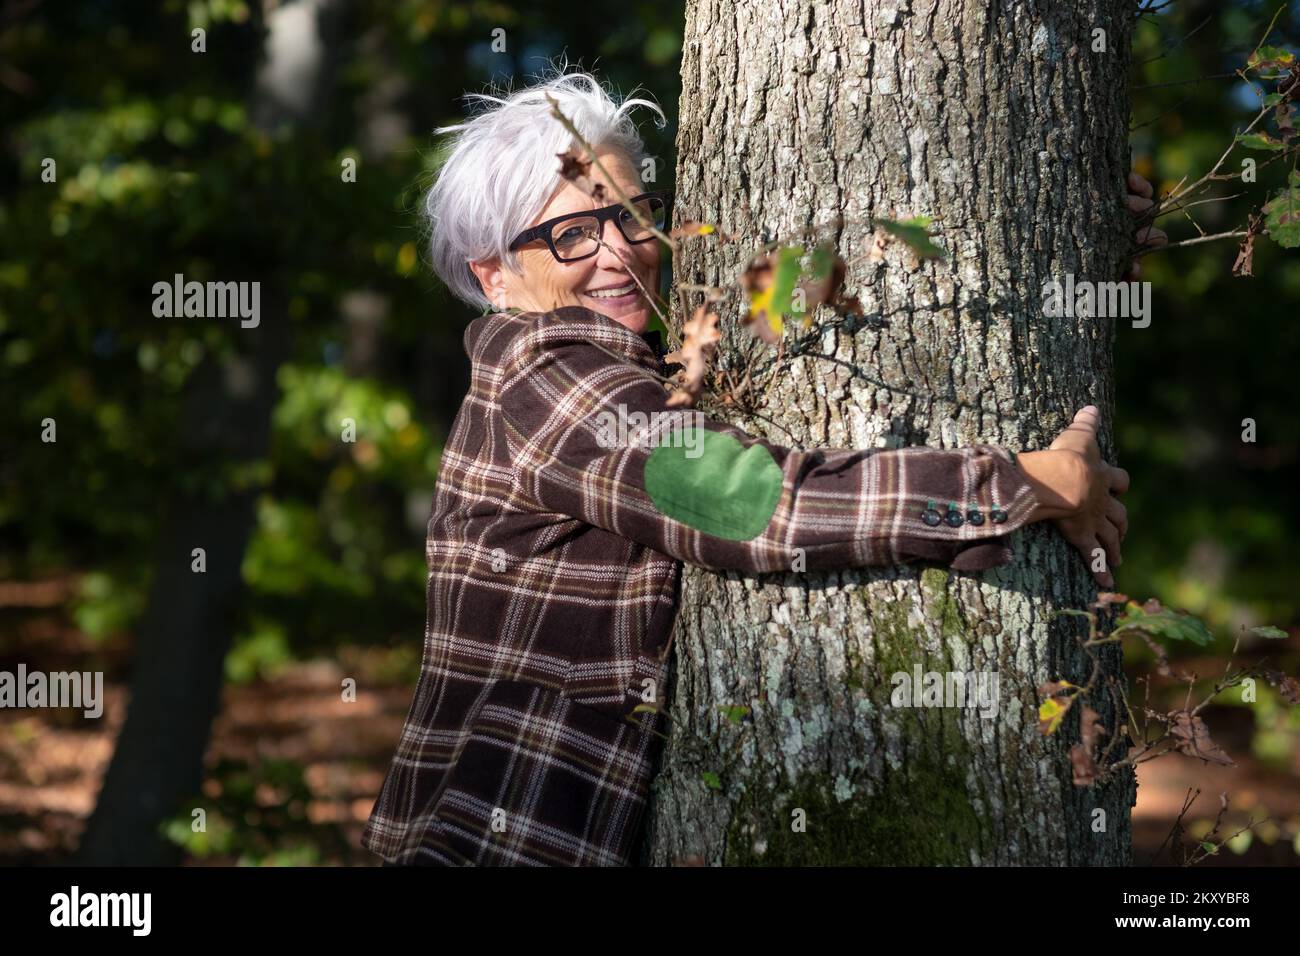 vecchia felice natura matura donna con capelli grigi con occhiali, negli anni cinquanta negli anni sessanta abbracciando un tronco di albero nella foresta, copia spazio Foto Stock